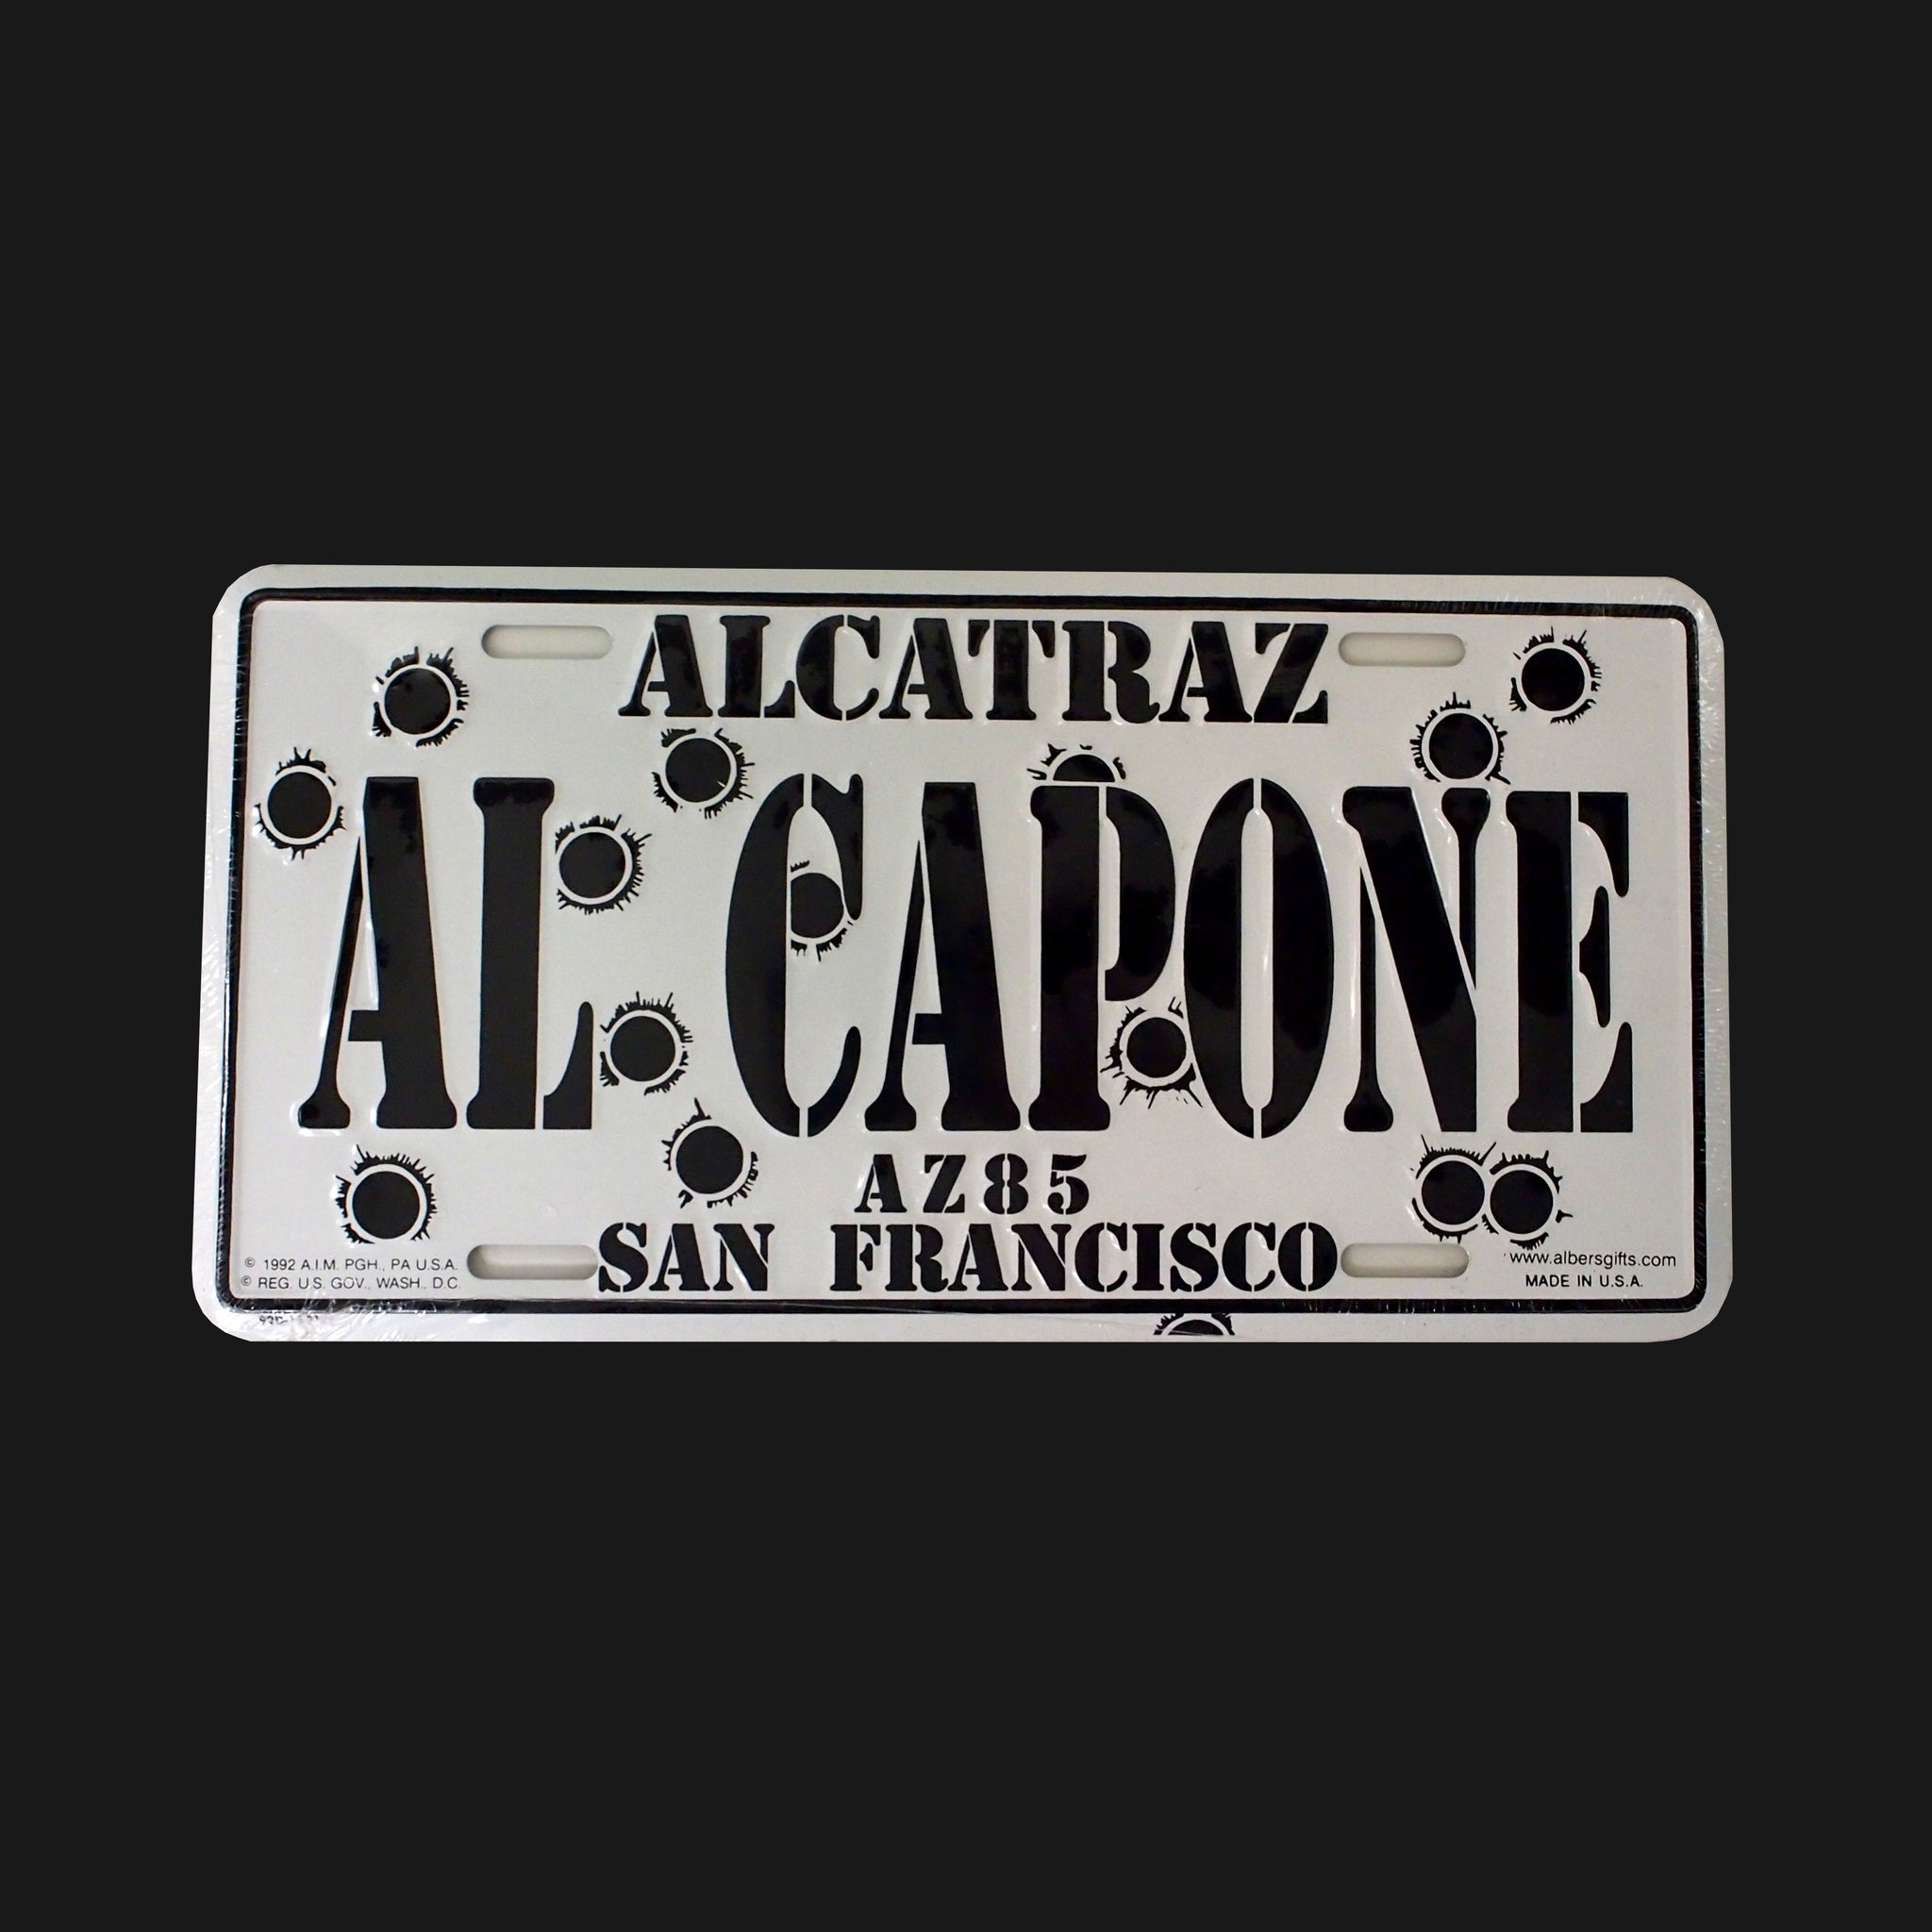 Al Capone License Plate